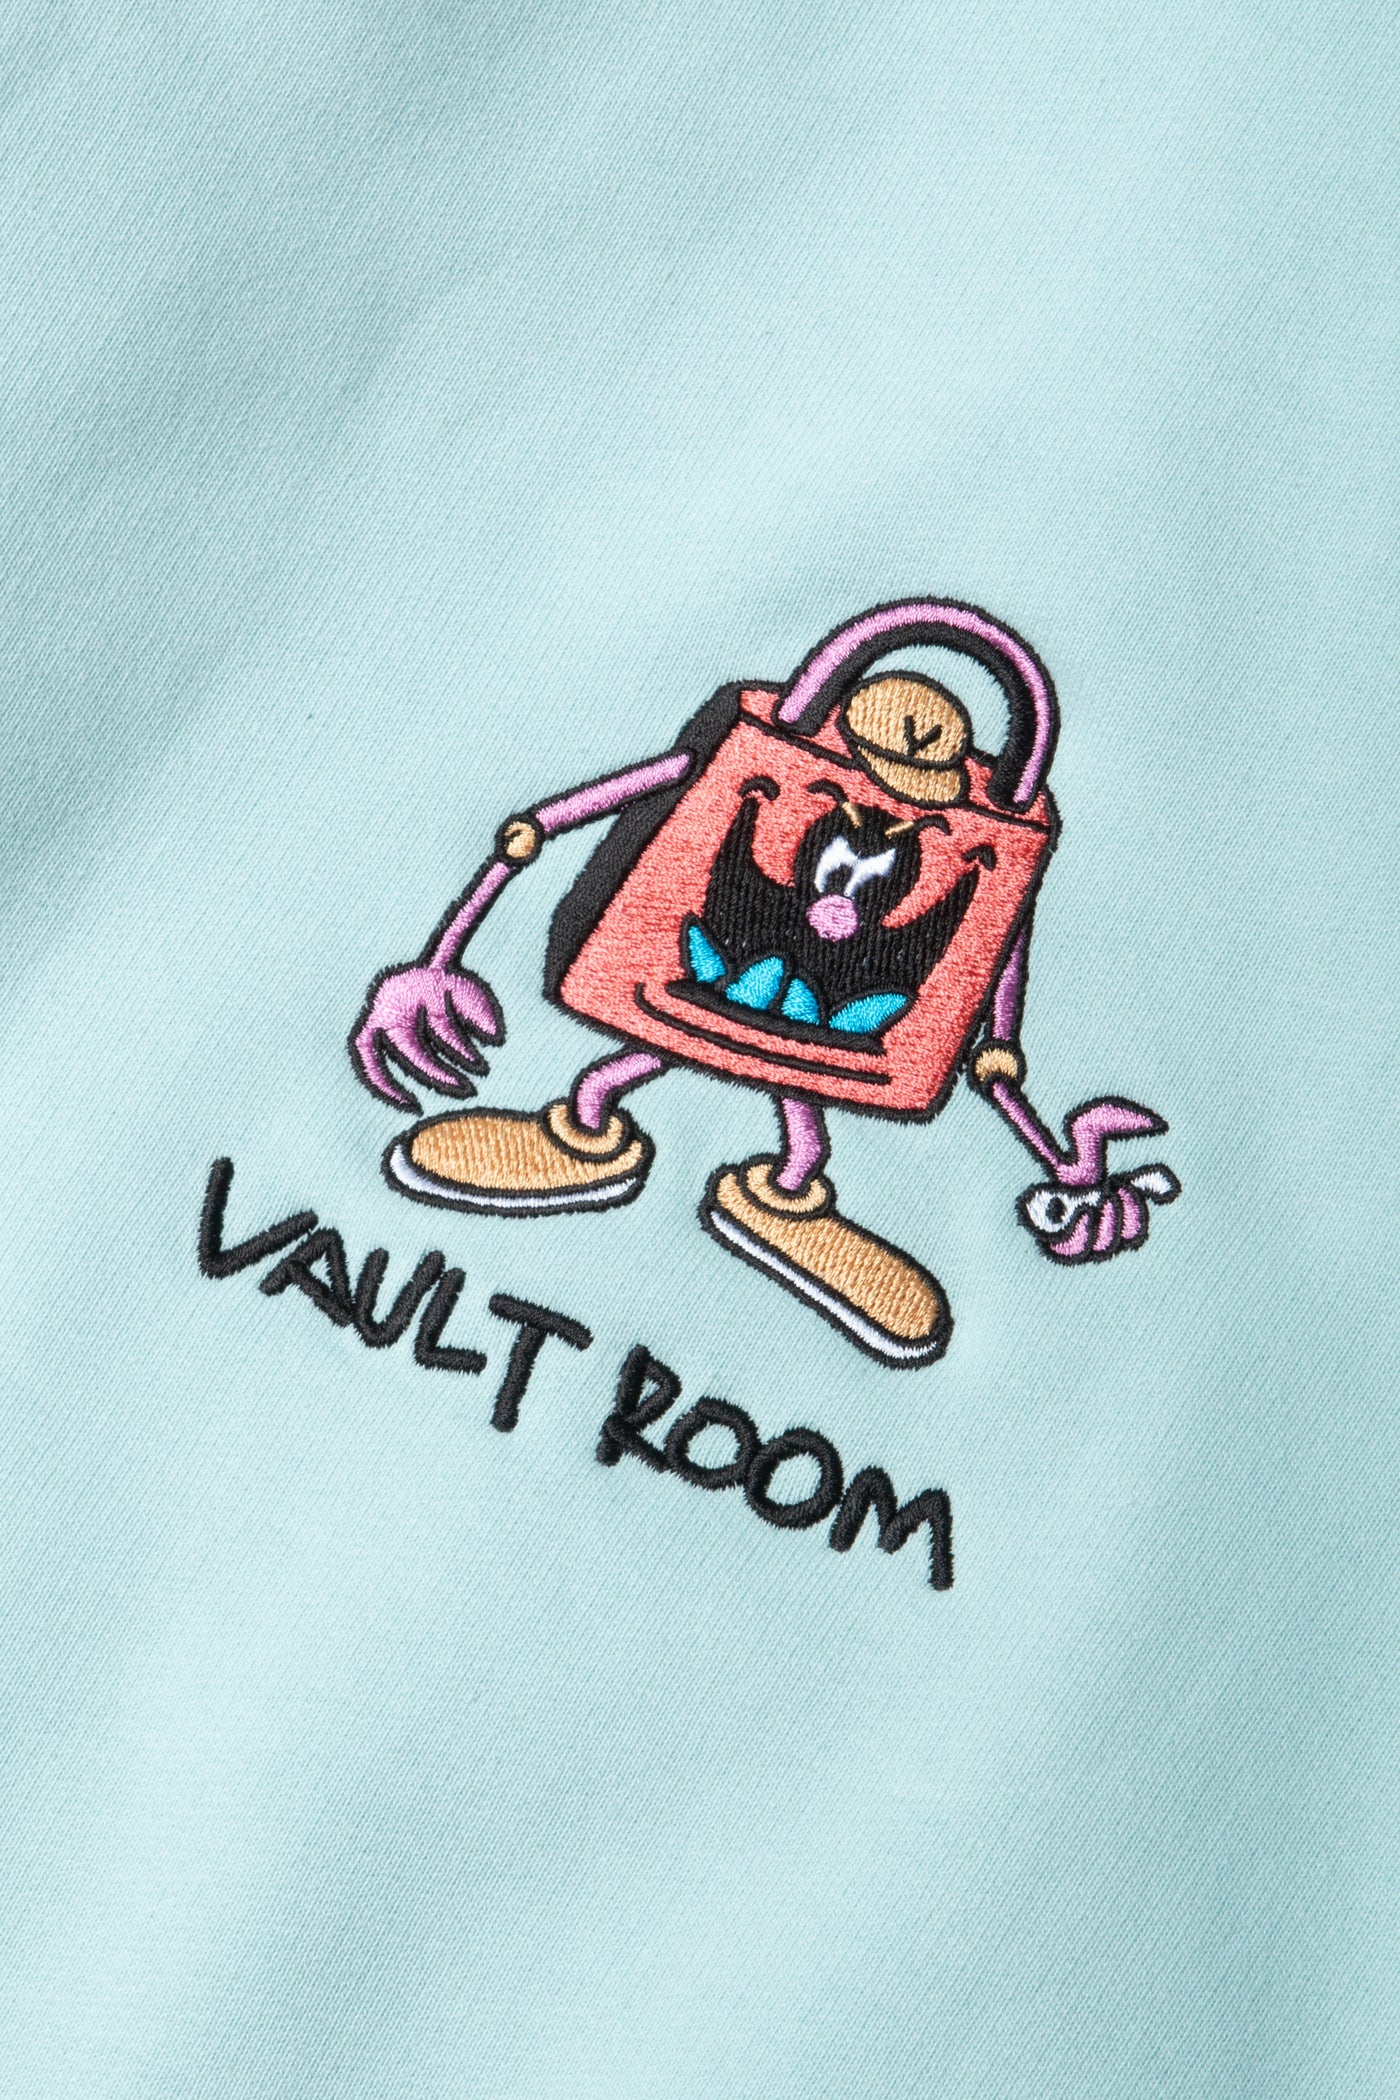 vaultroom "DEVIL" Hoodie / ICB / Size L